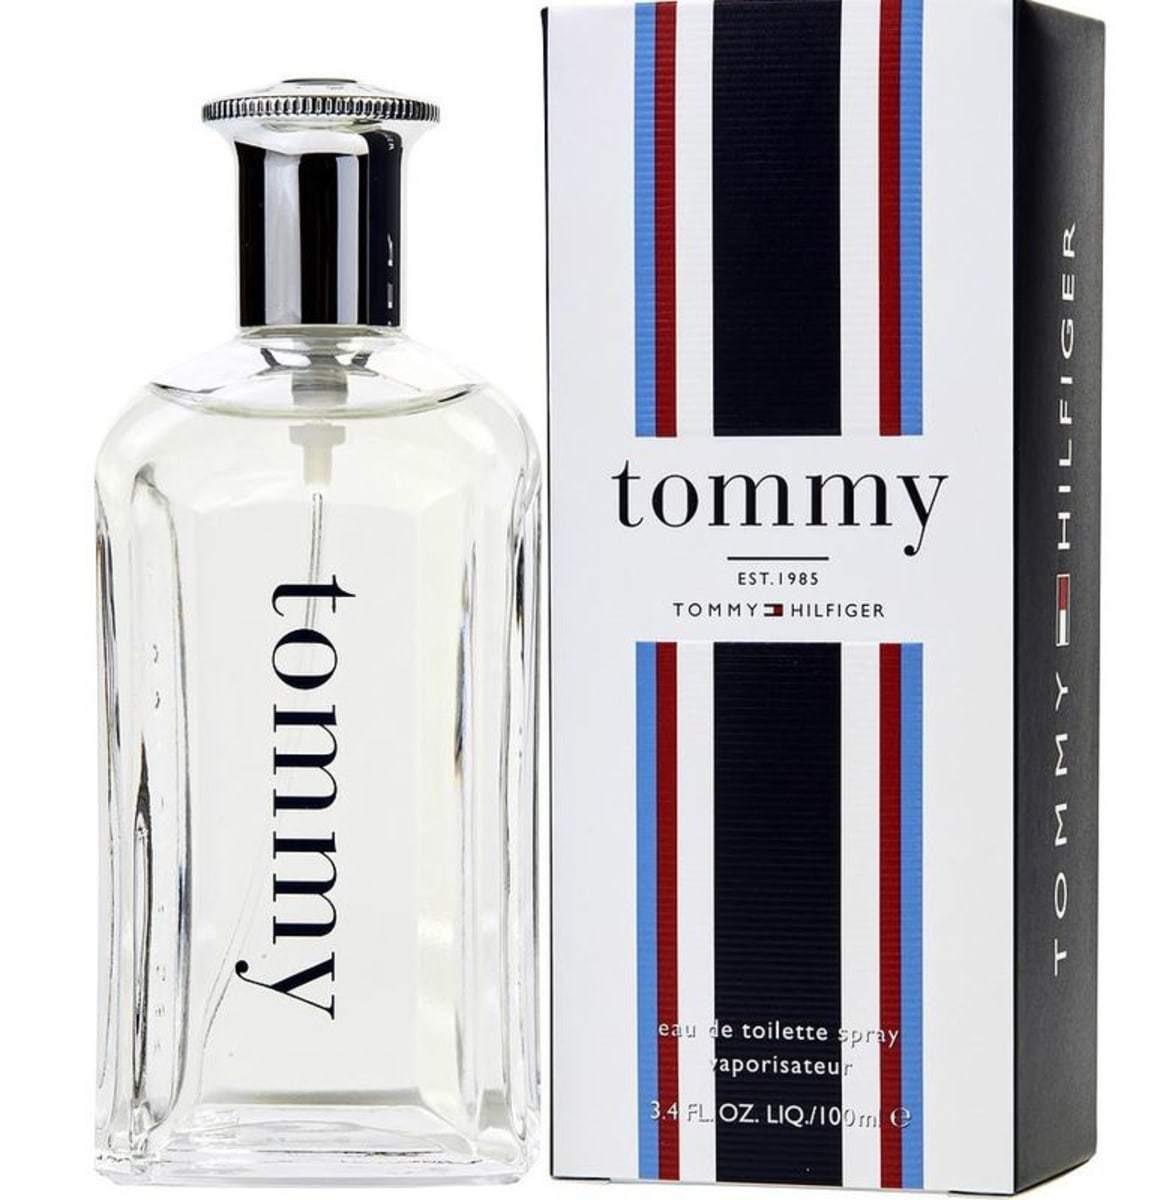 Tommy by Tommy Hilfiger Cologne for Men 3.4 oz / 100 ml Eau de Toilette Spray